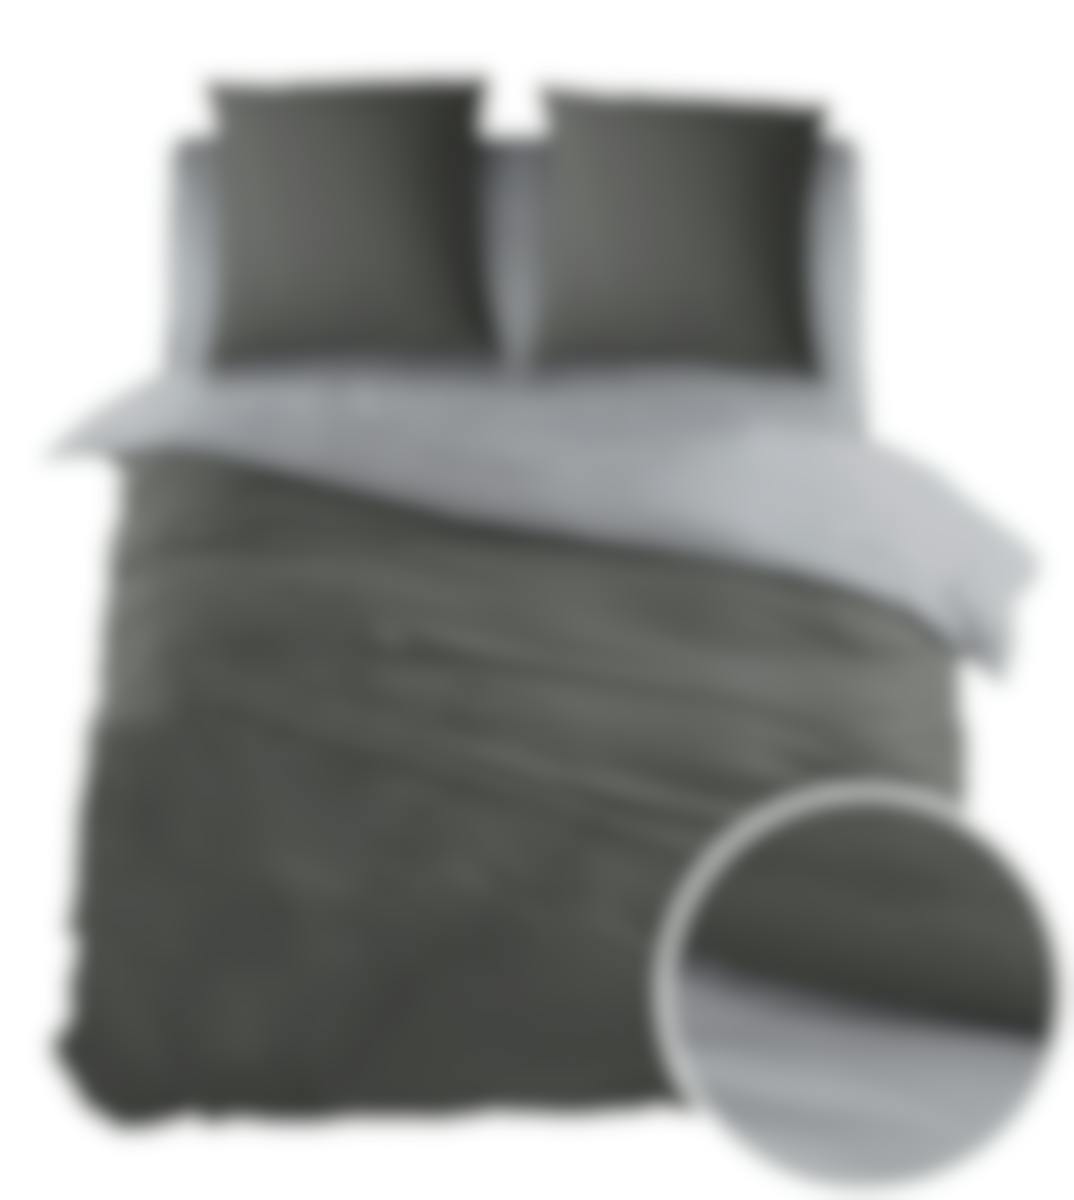 Sleepnight housse de couette Bicolor Antracite Gris Coton 270 x 200-220 cm